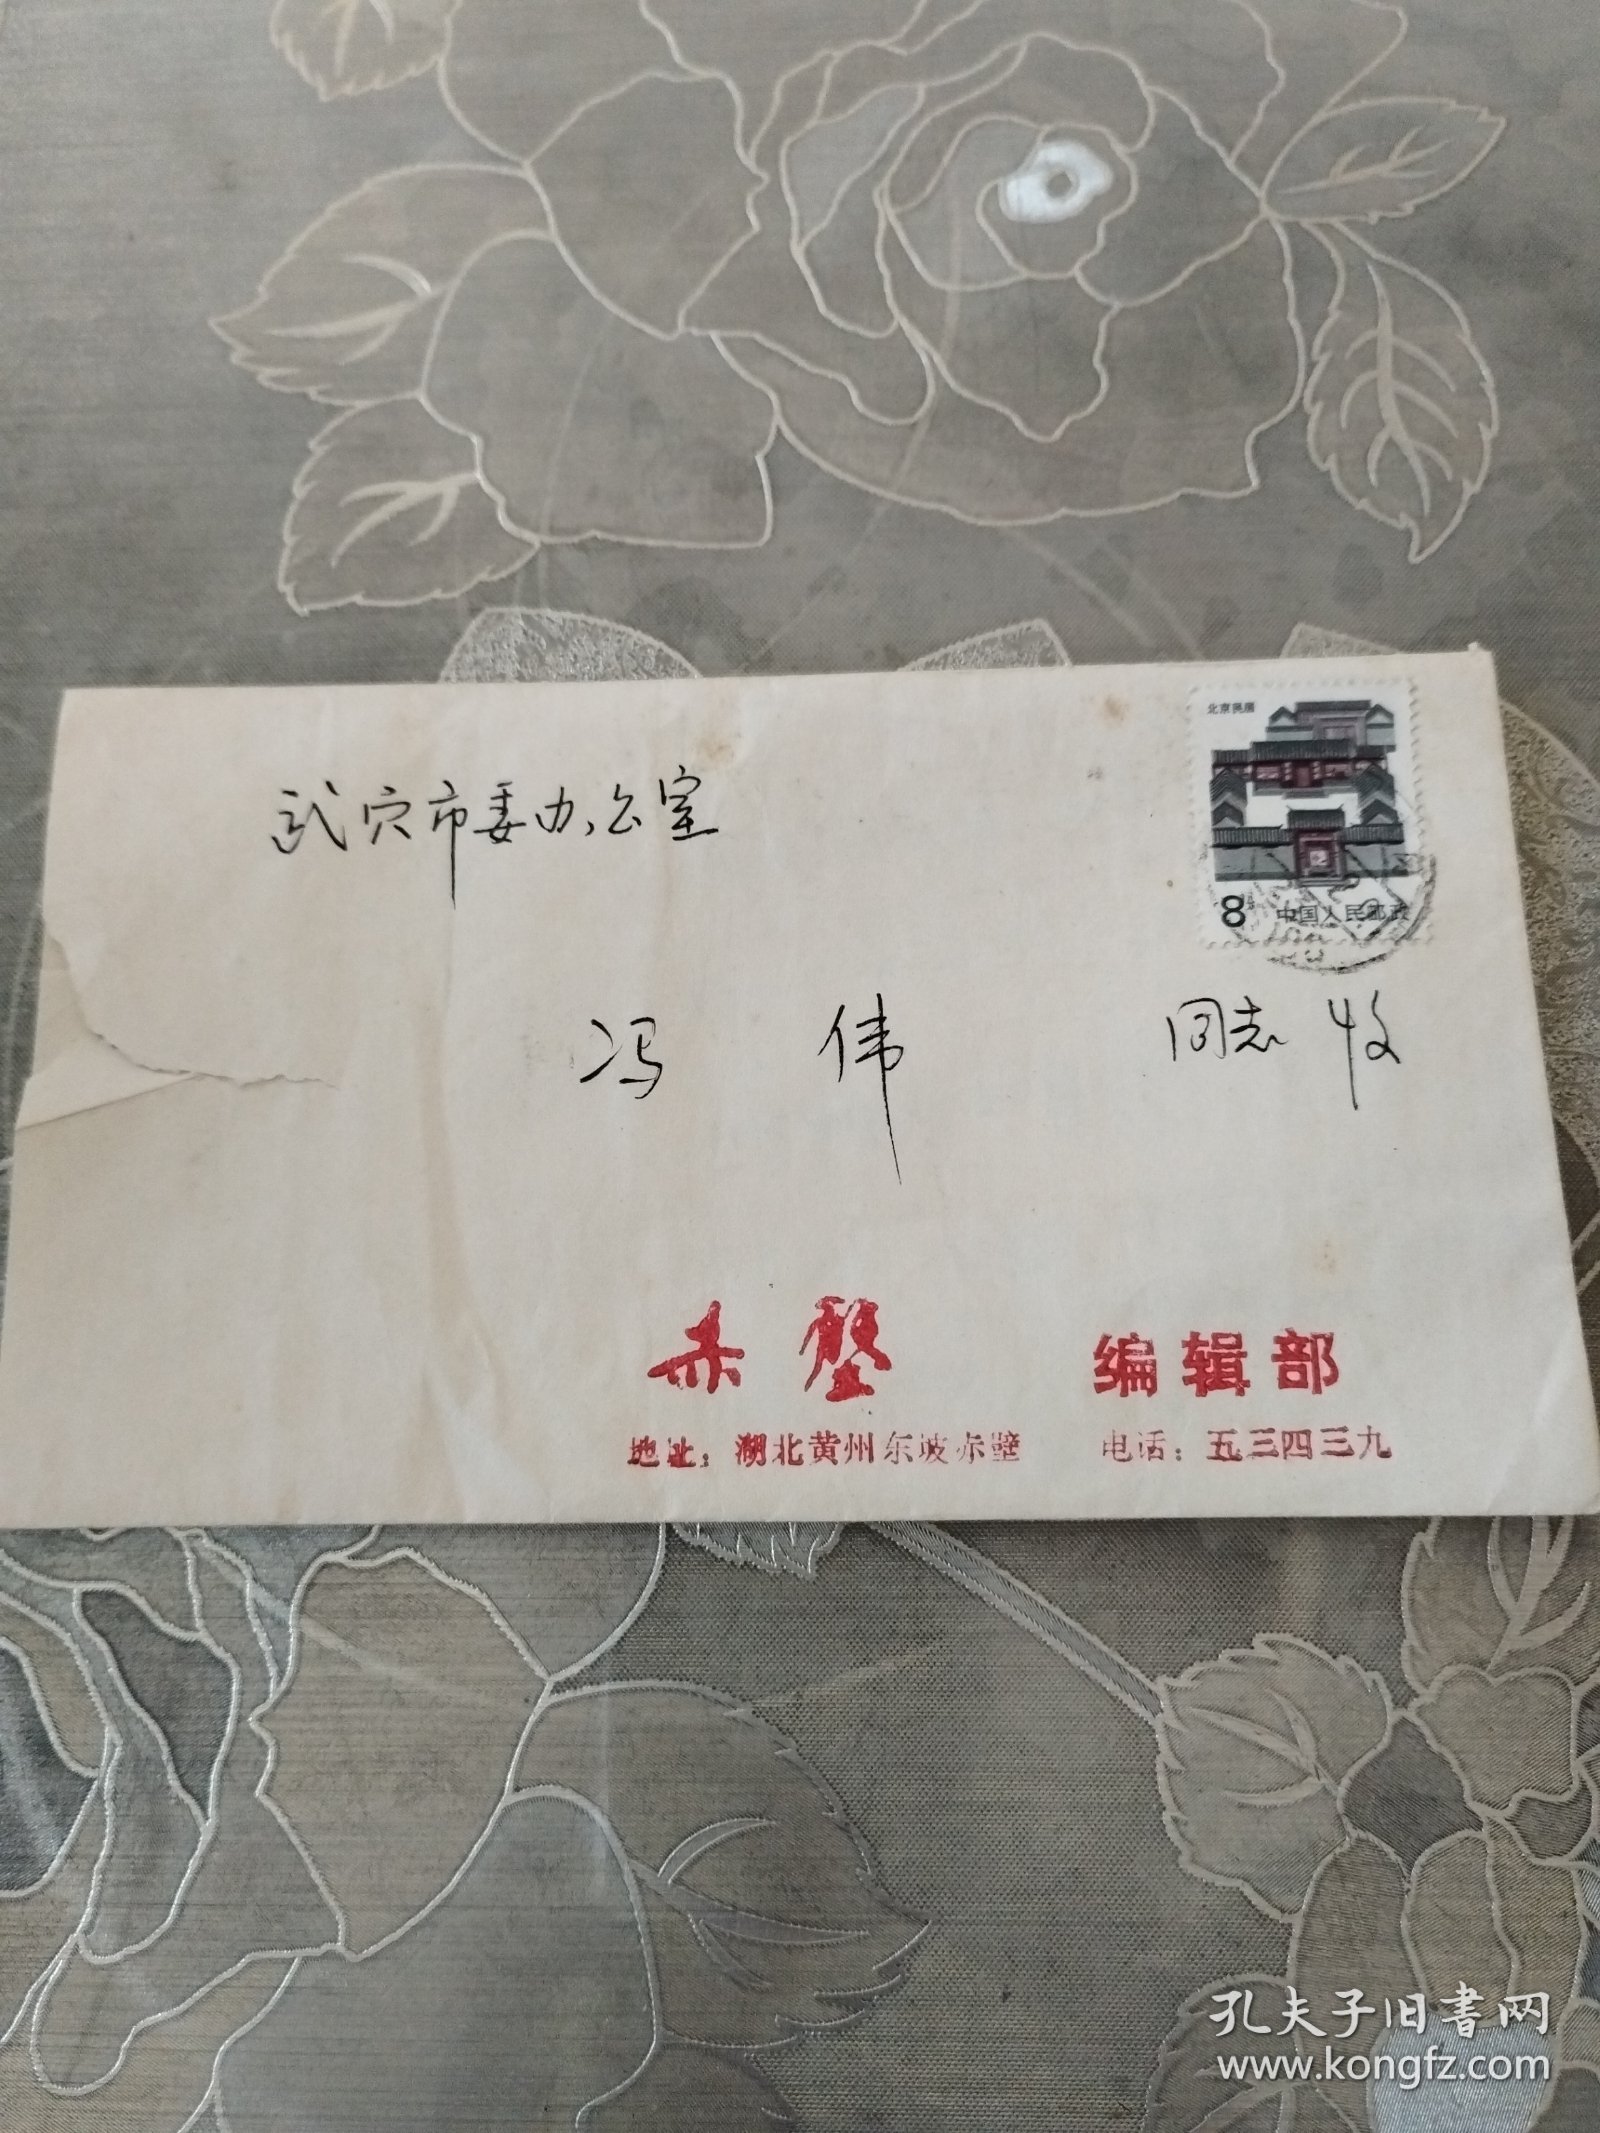 湖北黄州赤壁编辑部写给武穴市委办公室冯伟的信